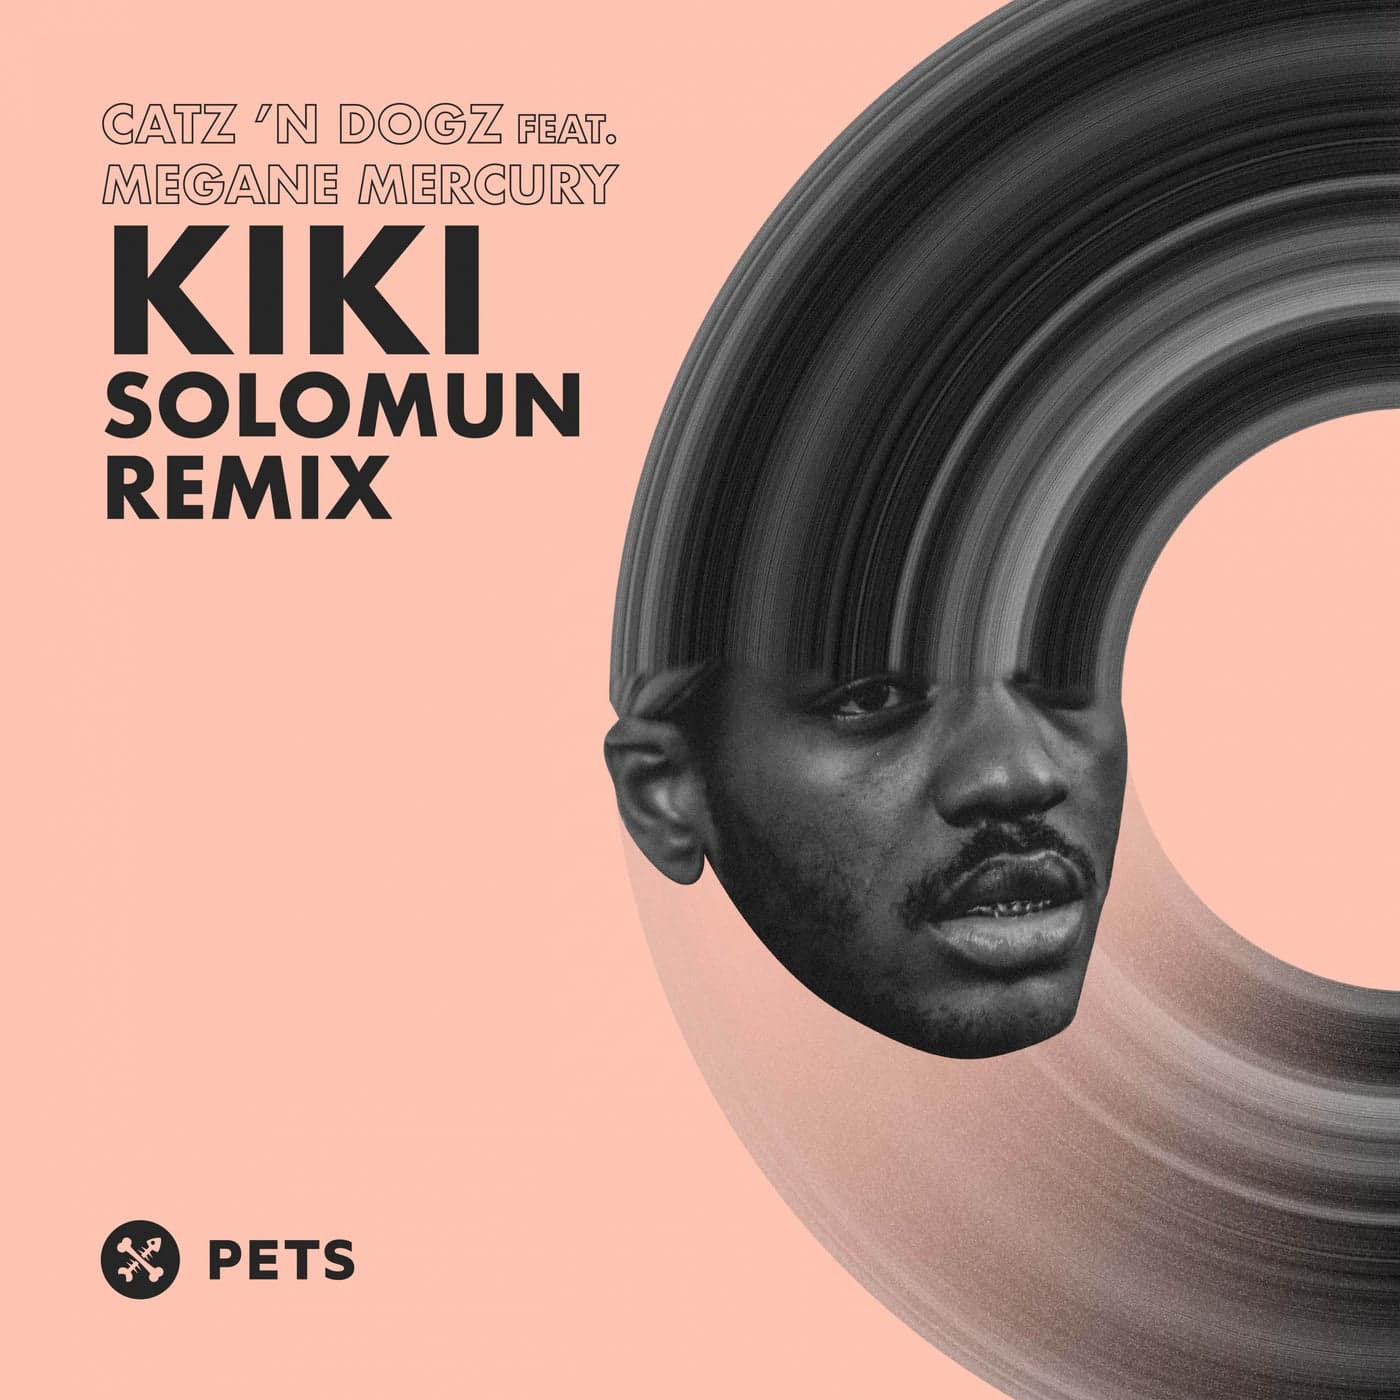 image cover: Catz 'n Dogz, Megane Mercury - Kiki (Solomun Remix) / PETS151